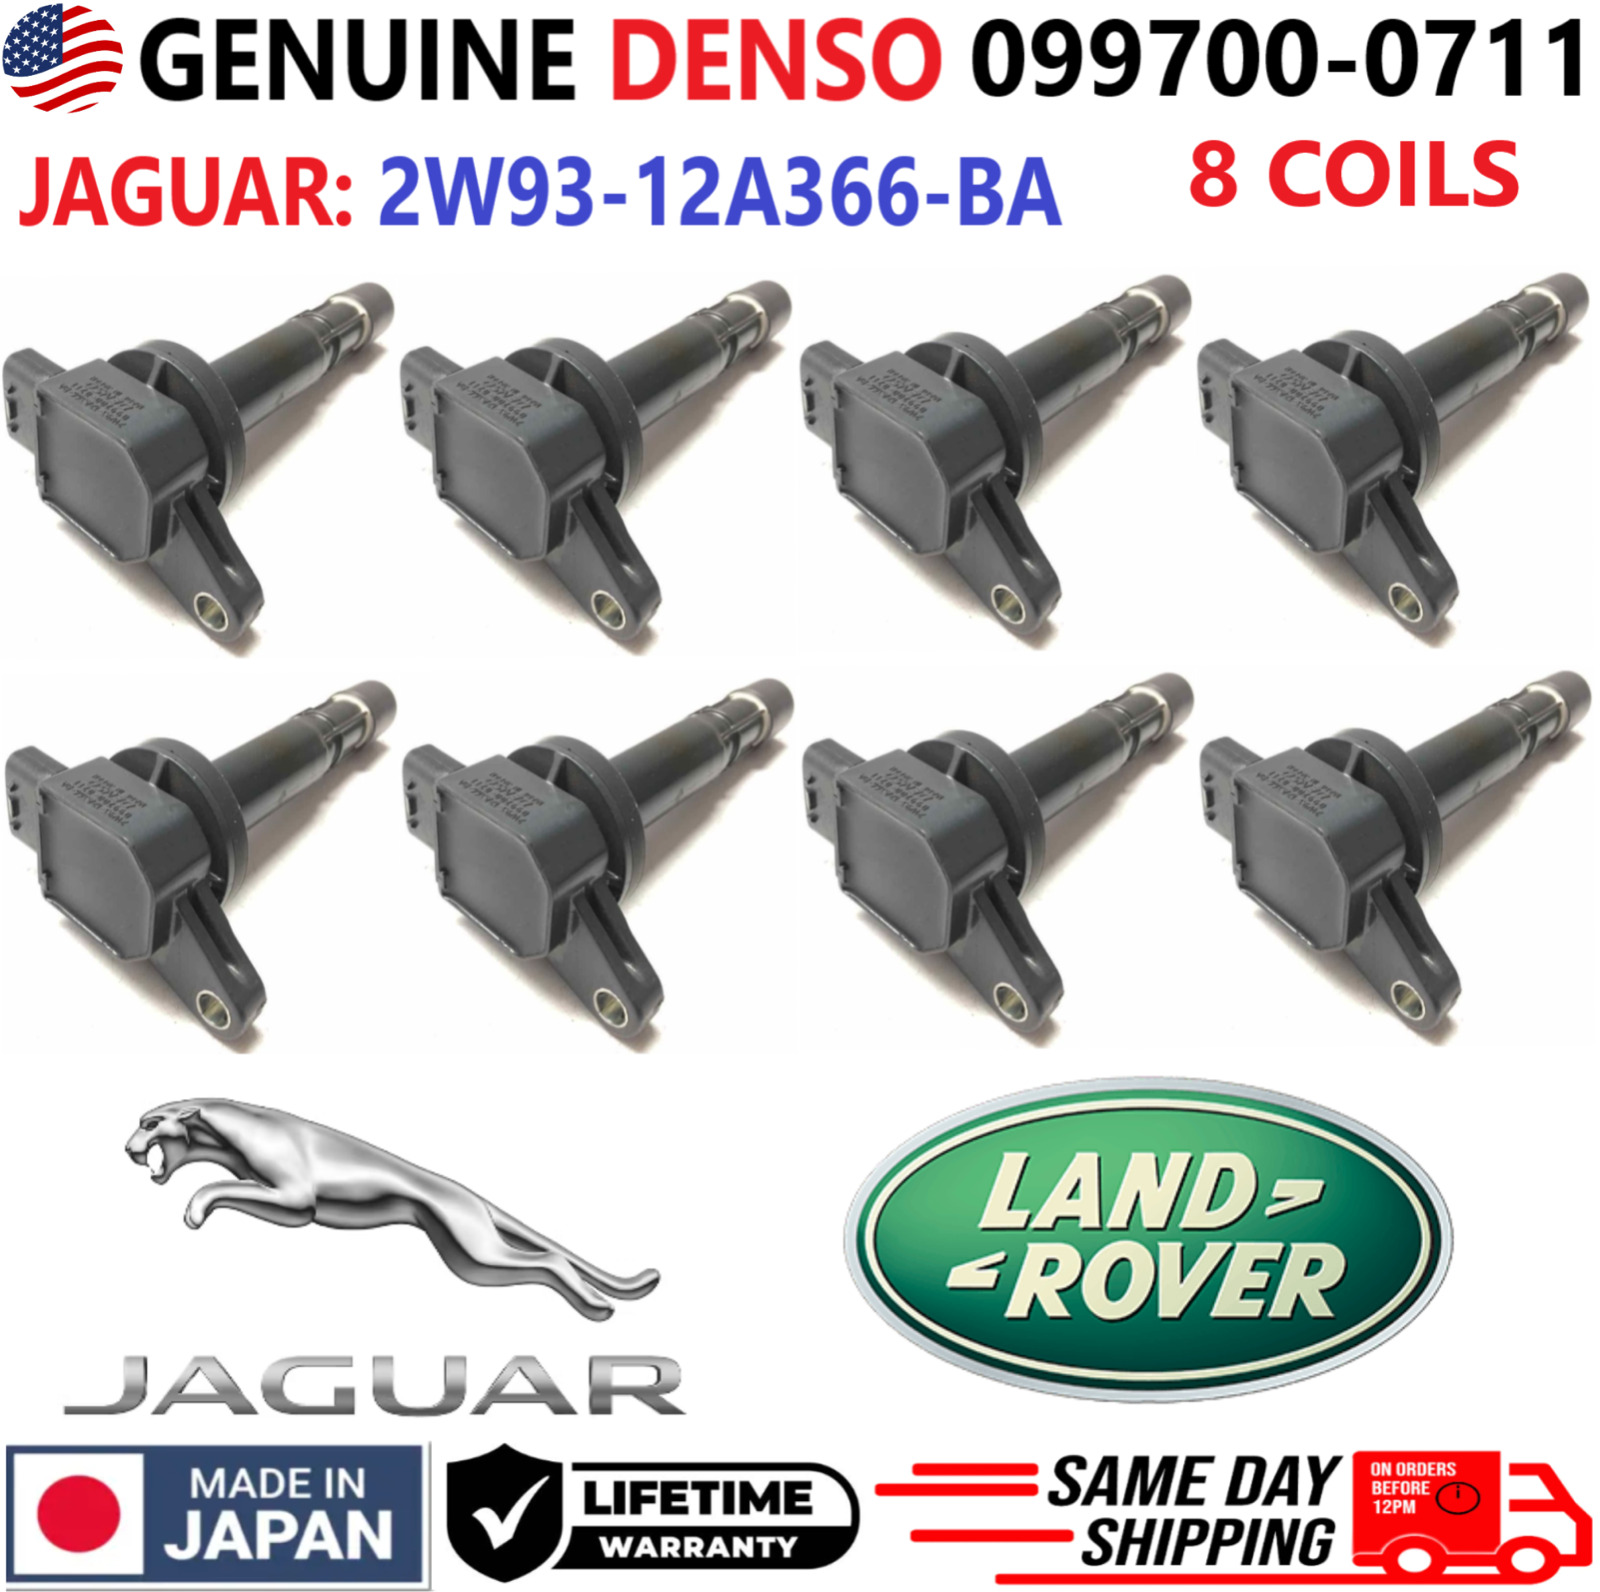 GENUINE DENSO x8 Ignition Coils For 2003-2010 Jaguar & Land Rover 2W93-12A366-BA